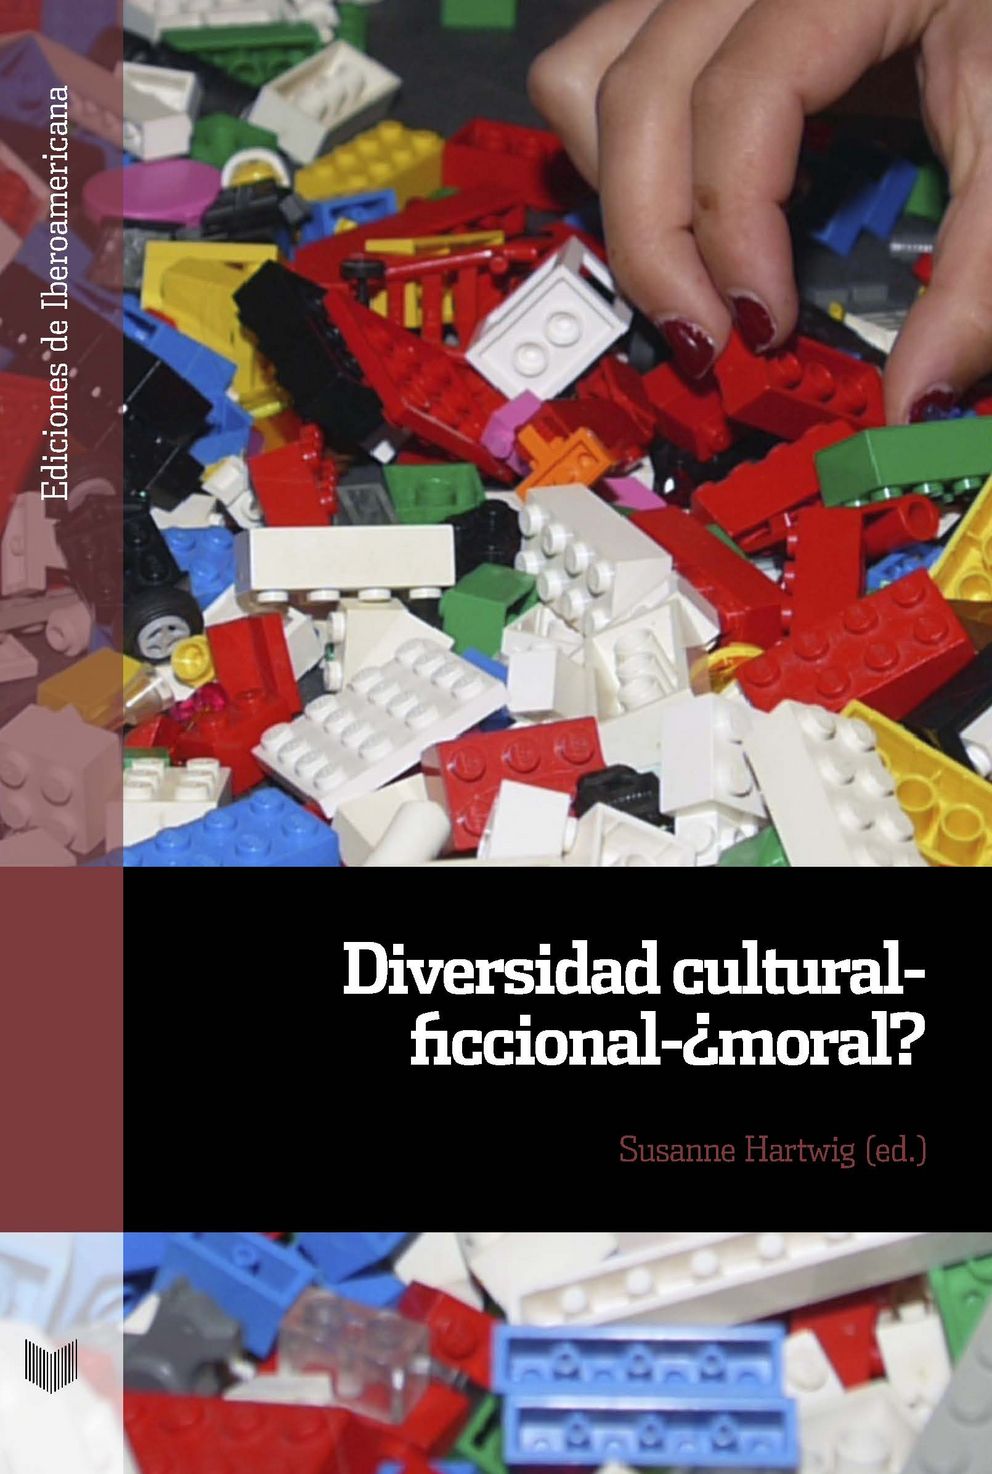 Cover des Buches "Diversidad cultural - ficcional - ¿moral?"